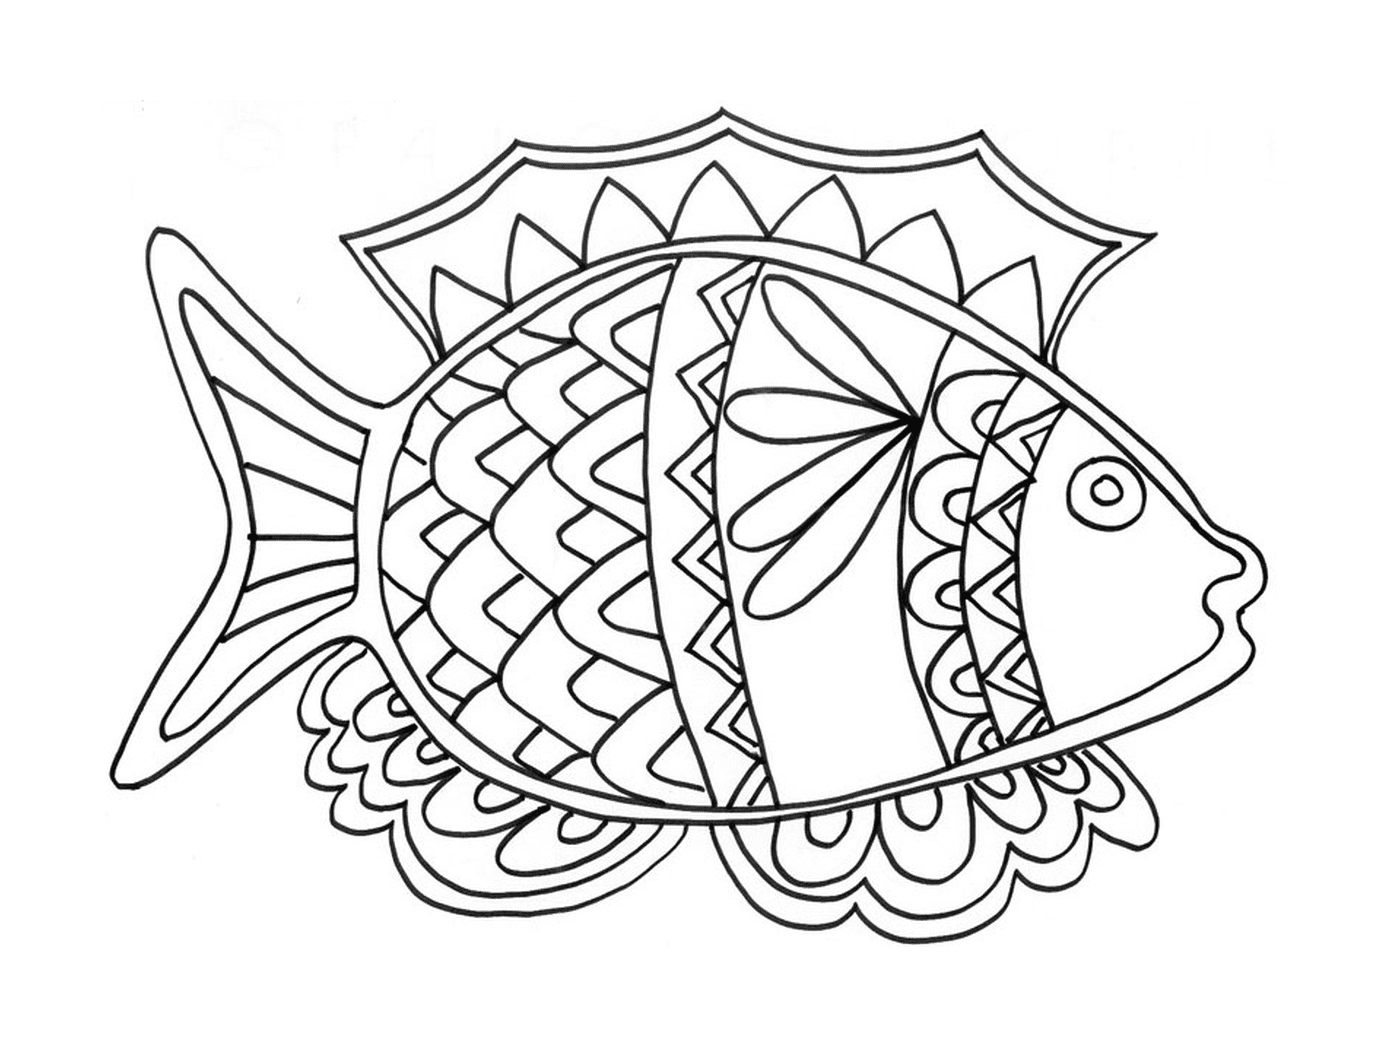  Dibujo de abril de peces 